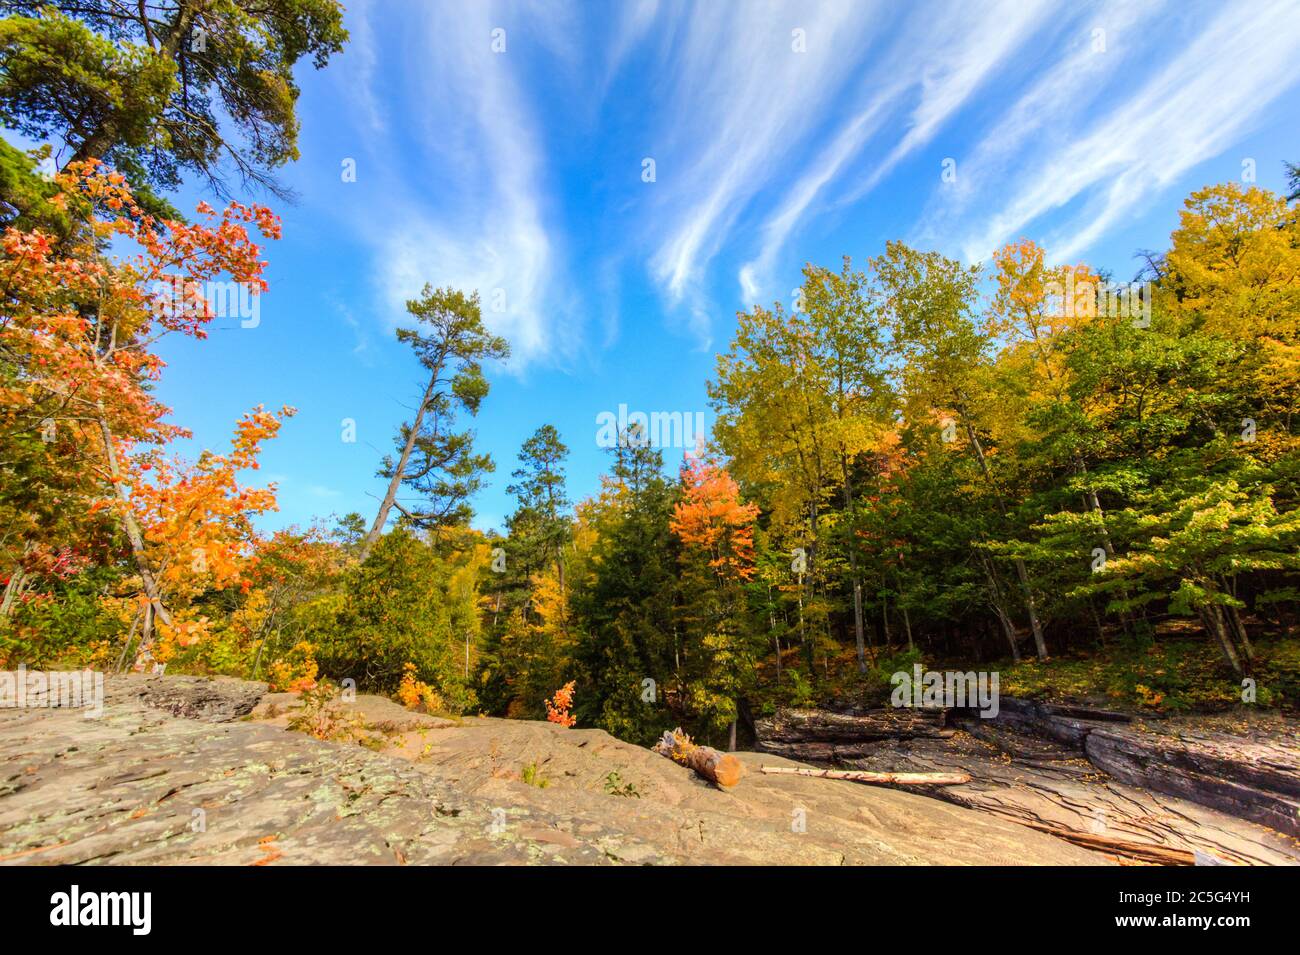 Herbstwaldlandschaft im Porcupine Mountains Wilderness State Park auf der Upper Peninsula of Michigan während der Herbstfärbung. Stockfoto